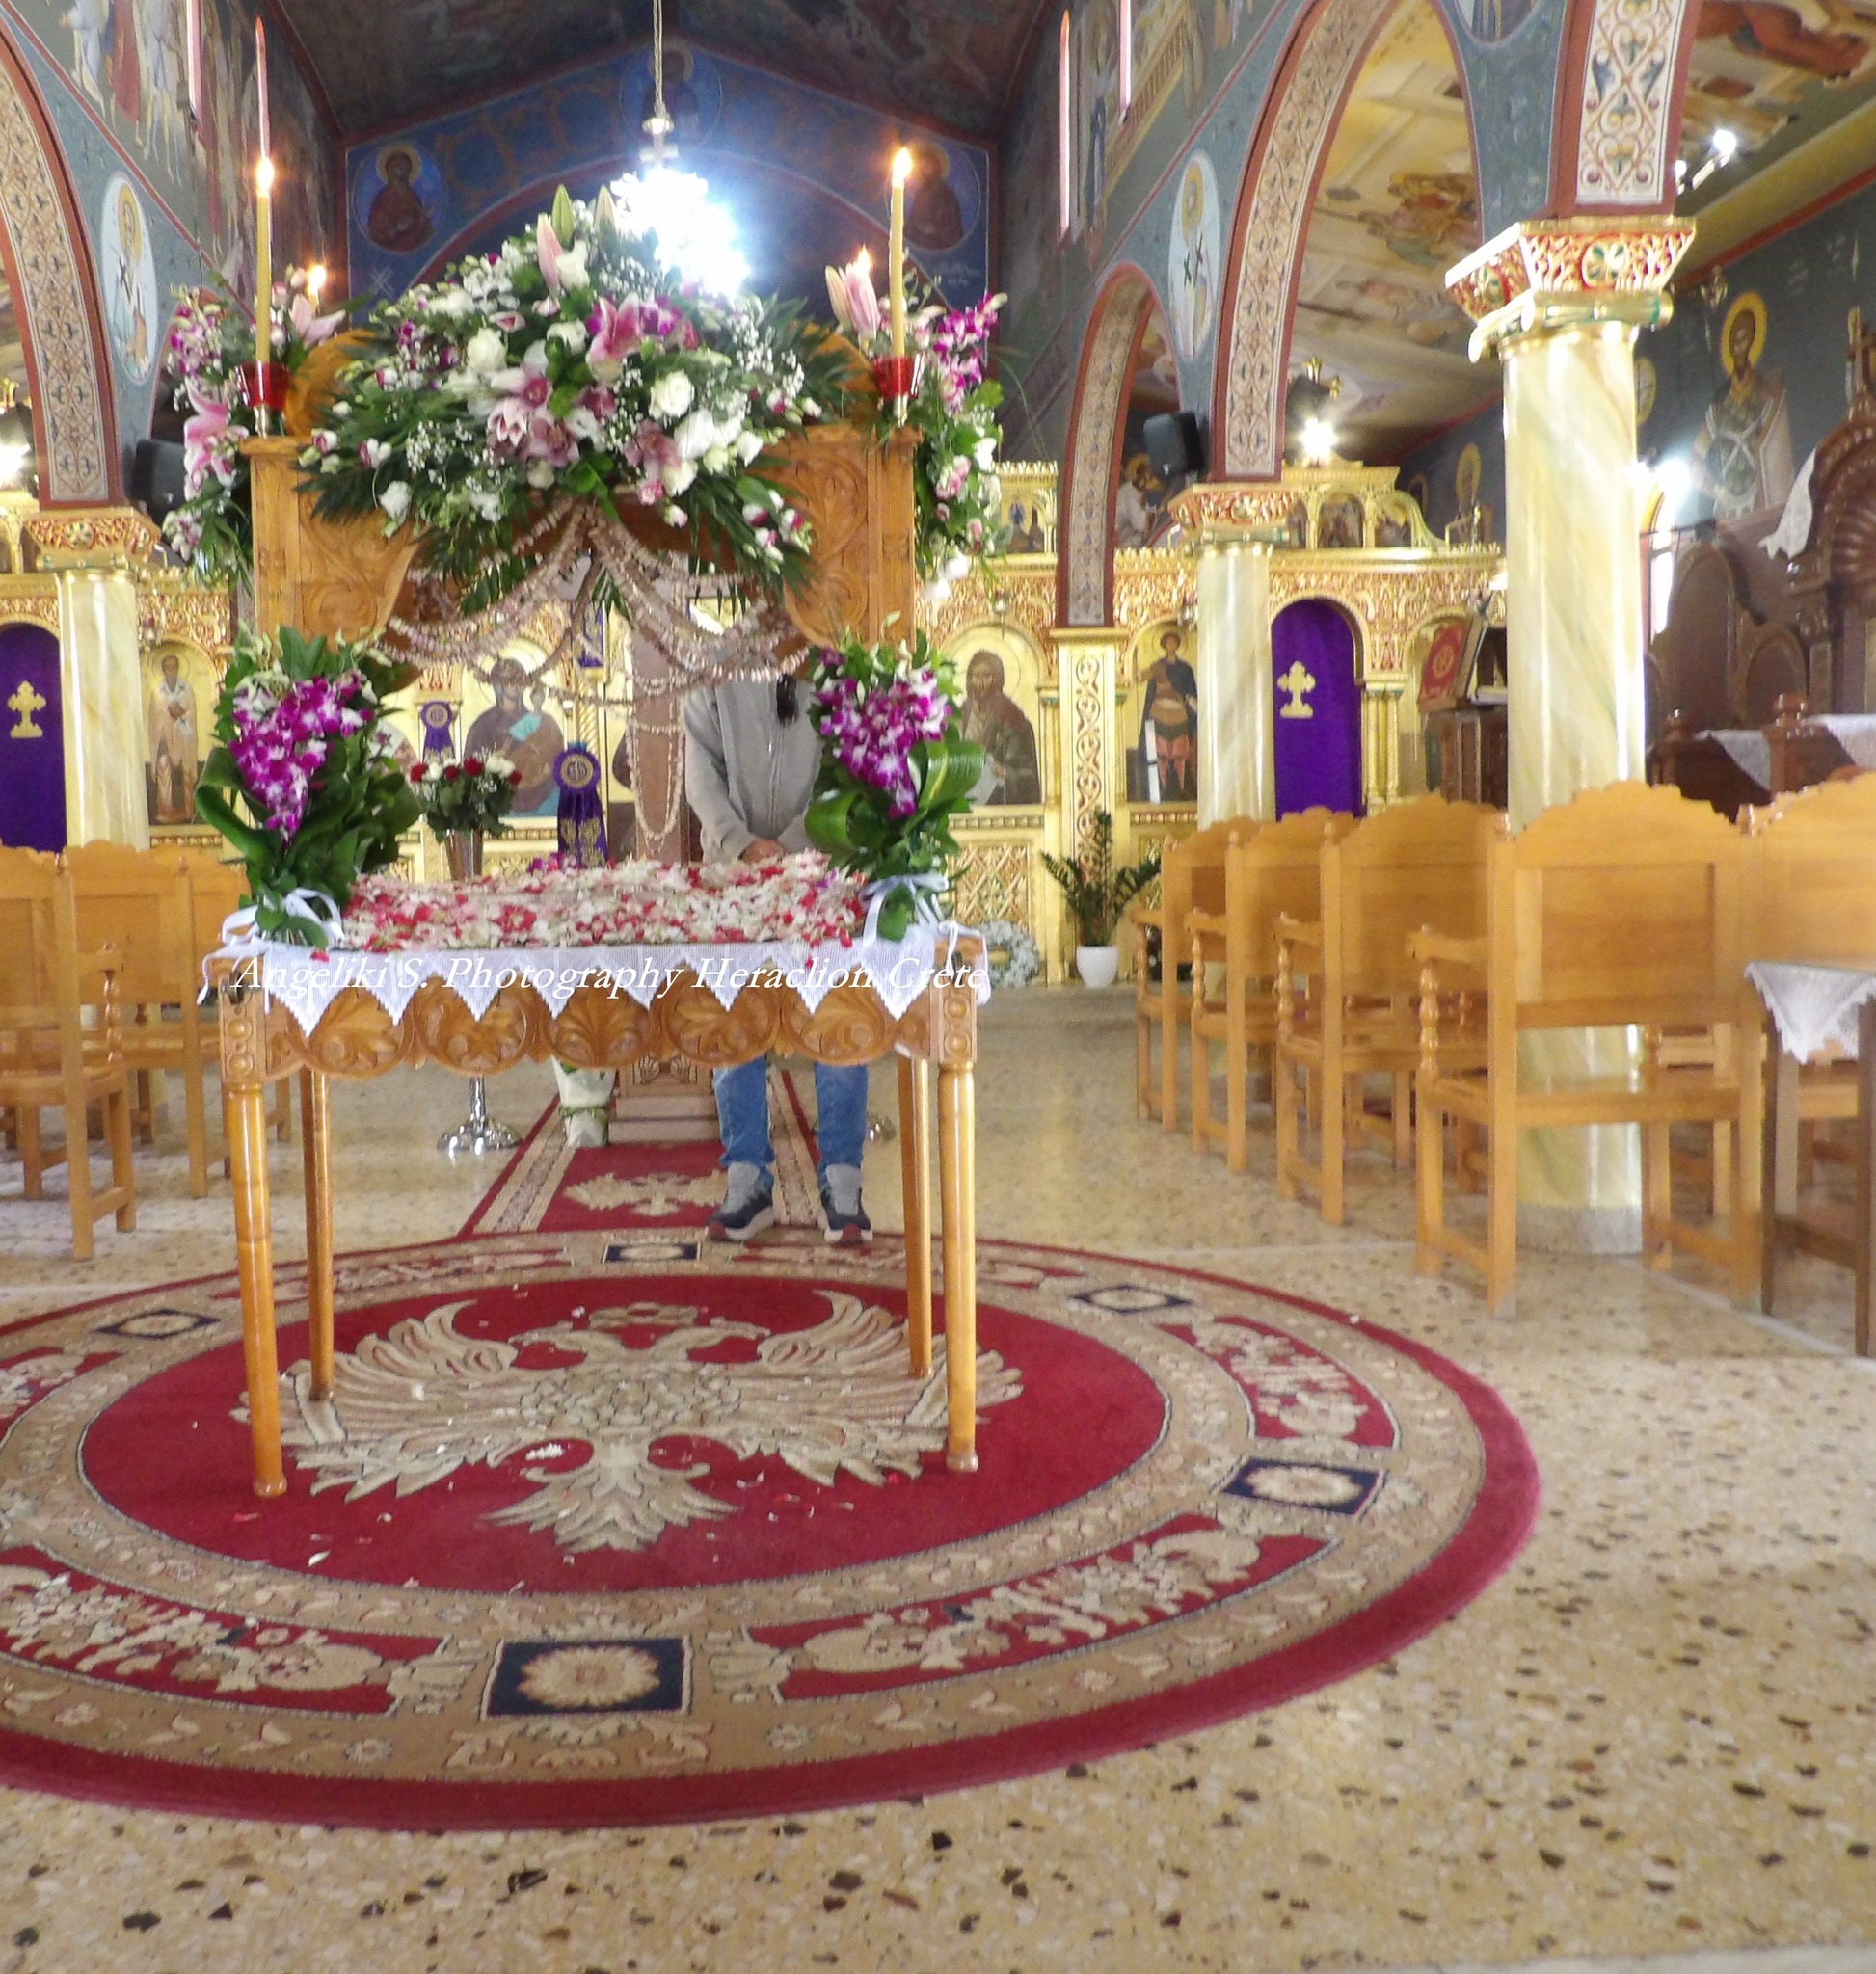 Ιερός Ναός Αγίου Νικολάου ΓαζίουAngeliki S. Photography Heraclion Crete